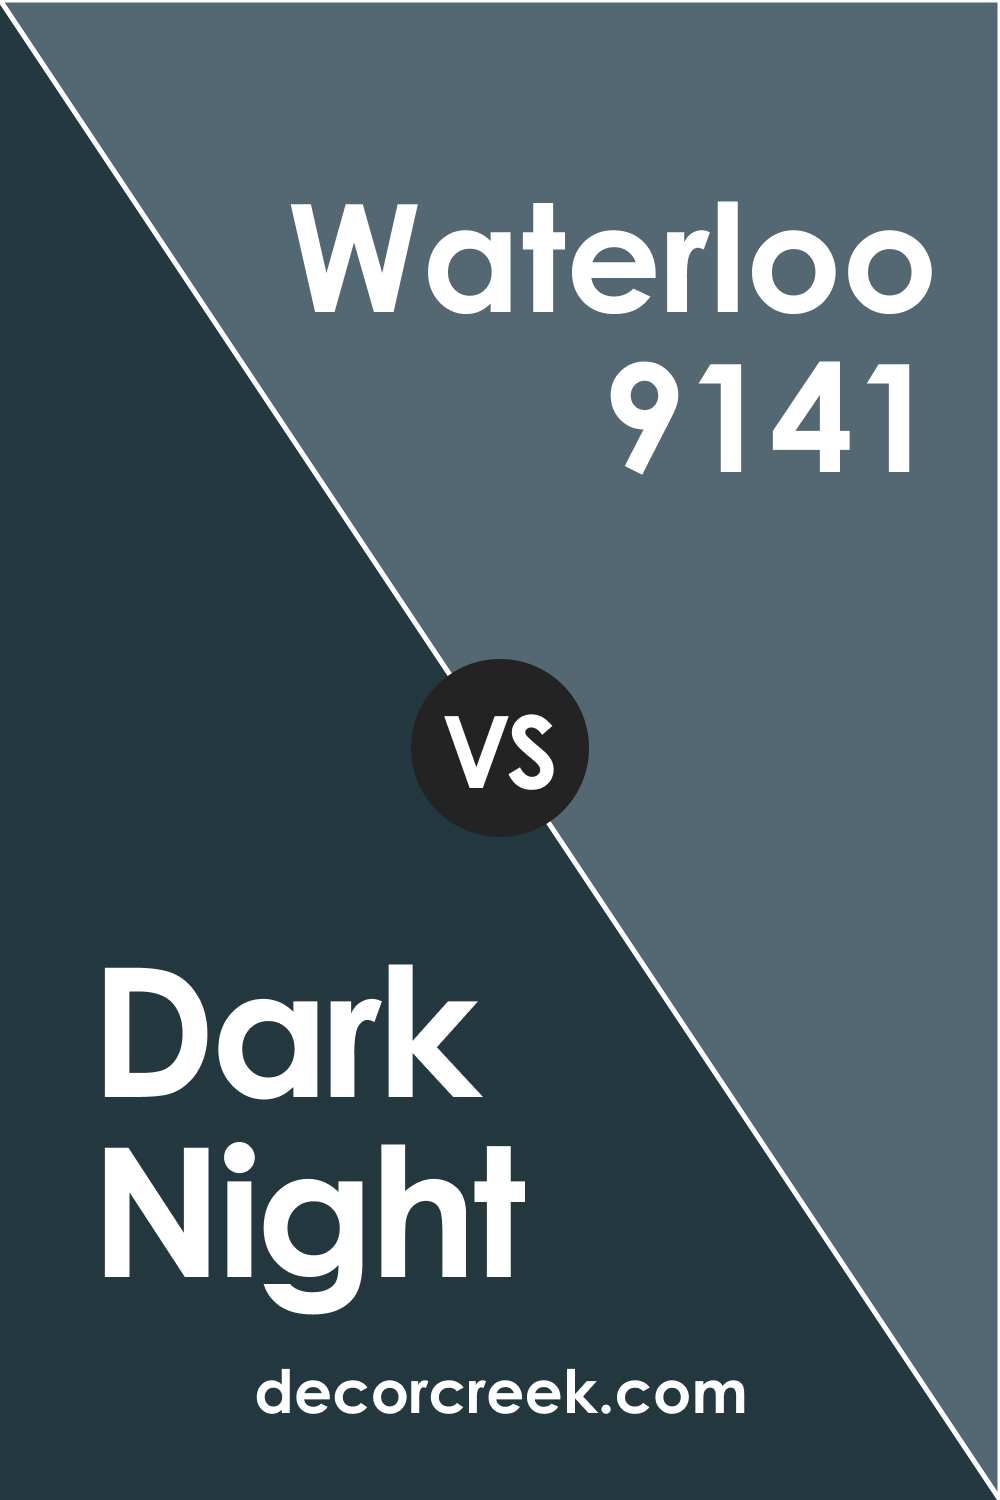 Dark Night vs Waterloo